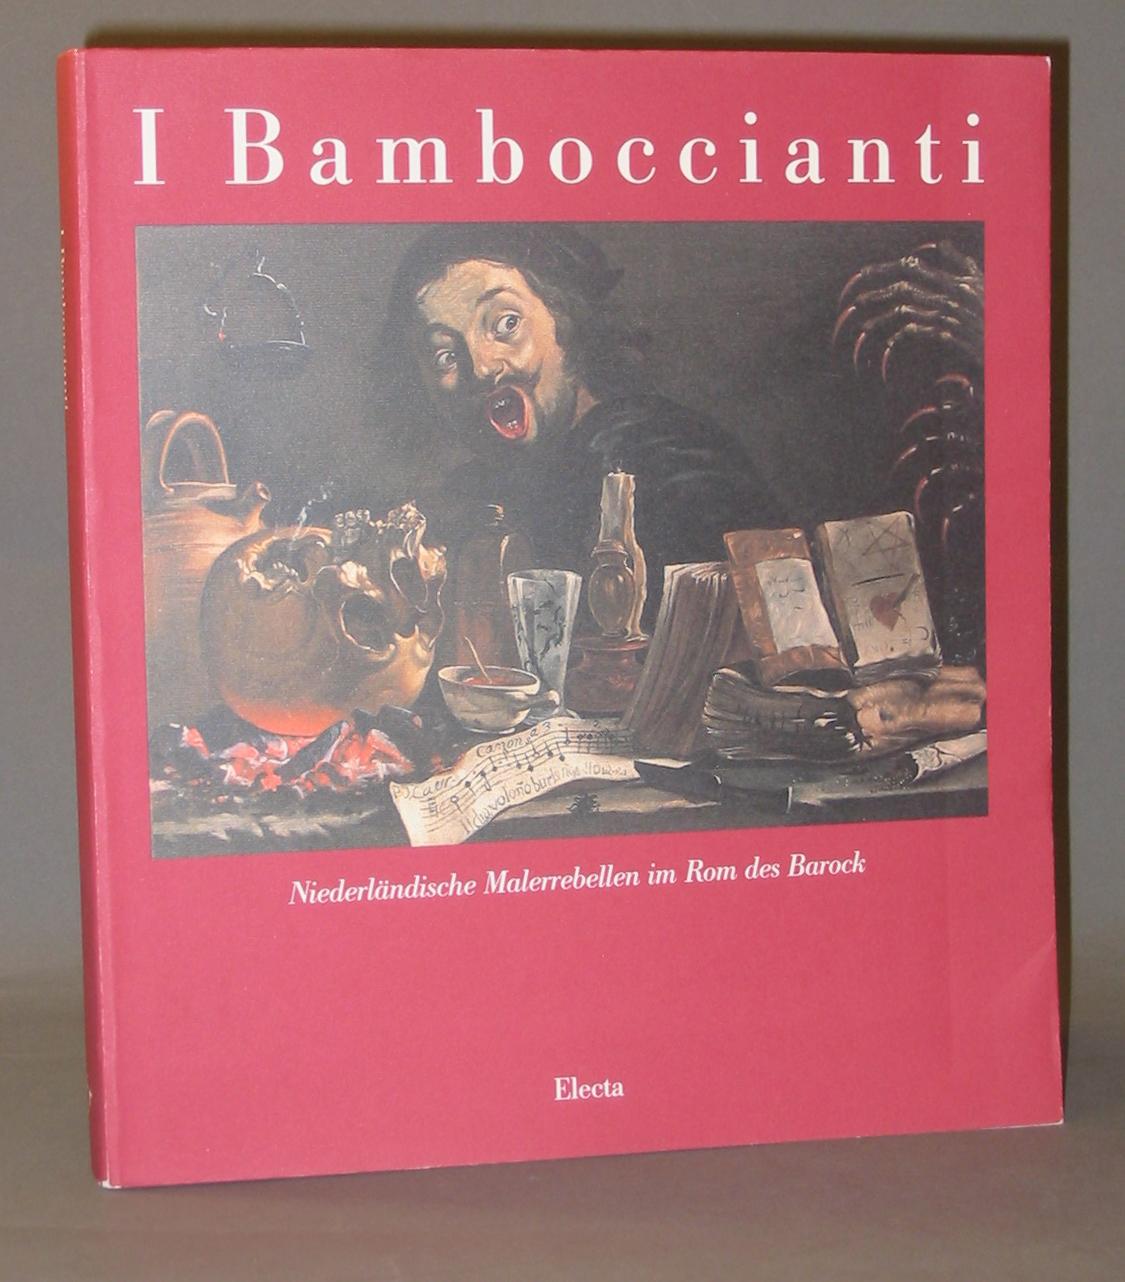 I Bamboccianti: Niederlandische Malerrebellen Im Rom DES Barock